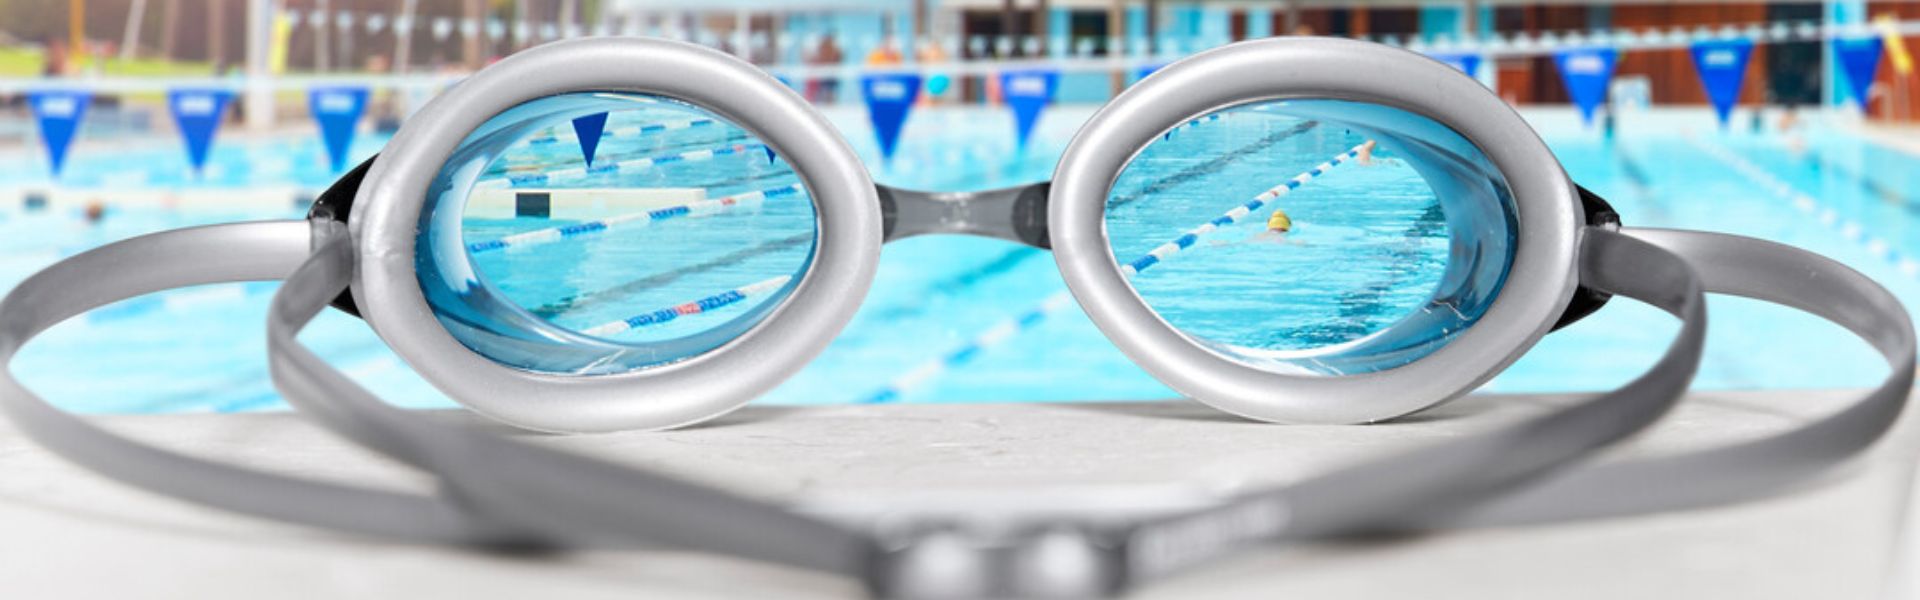 perscription swimming goggles 